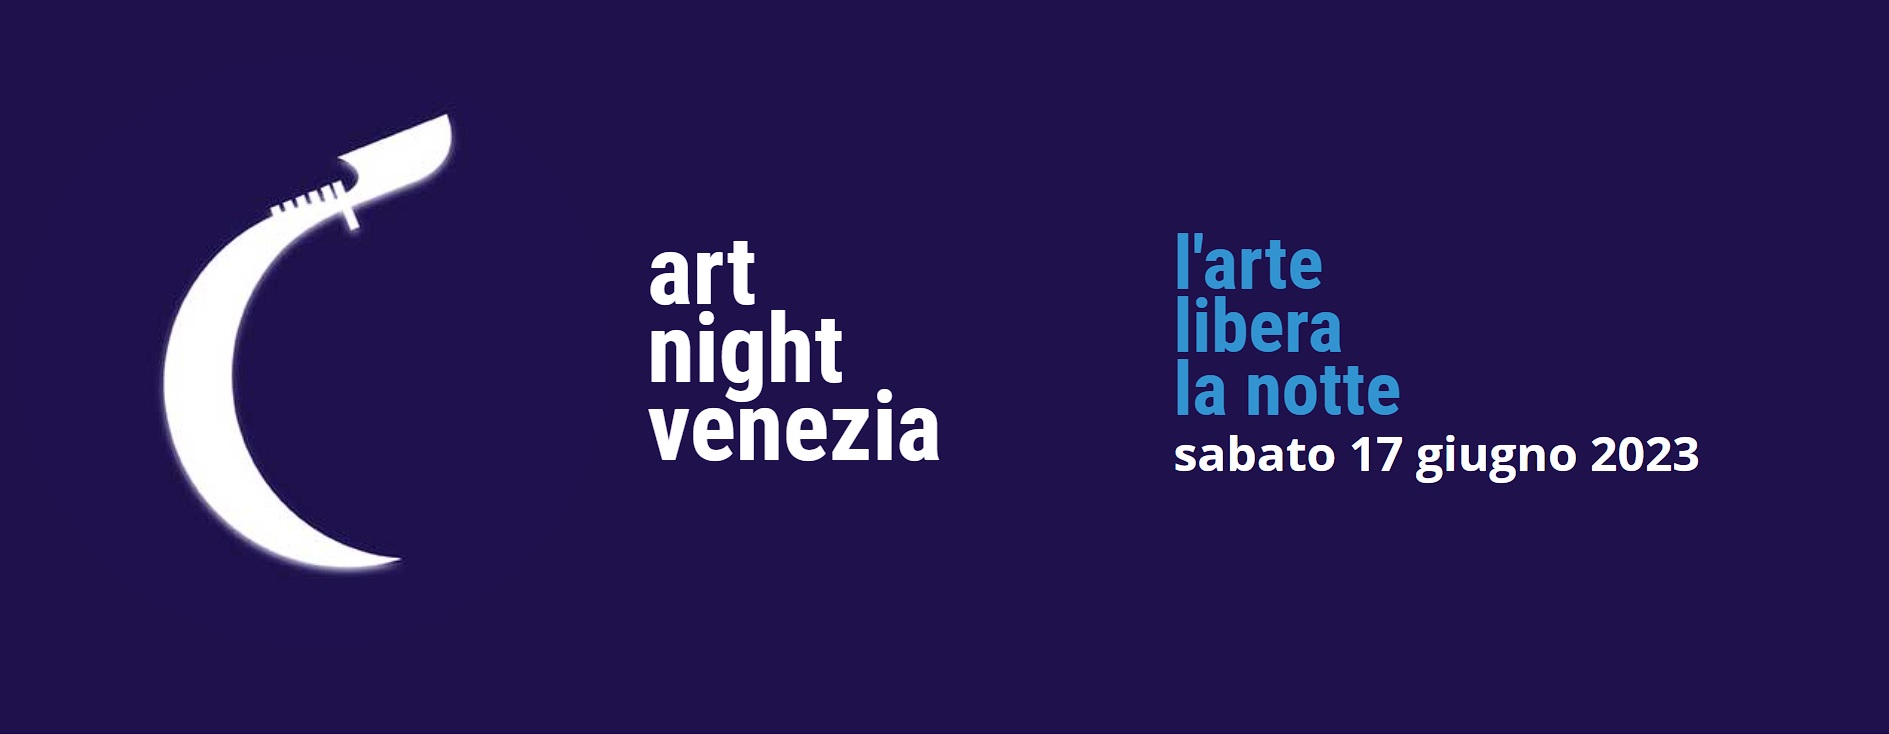 Art Night Venezia 2023: Ein magischer Abend voller Kunst, Kultur und Kreativität